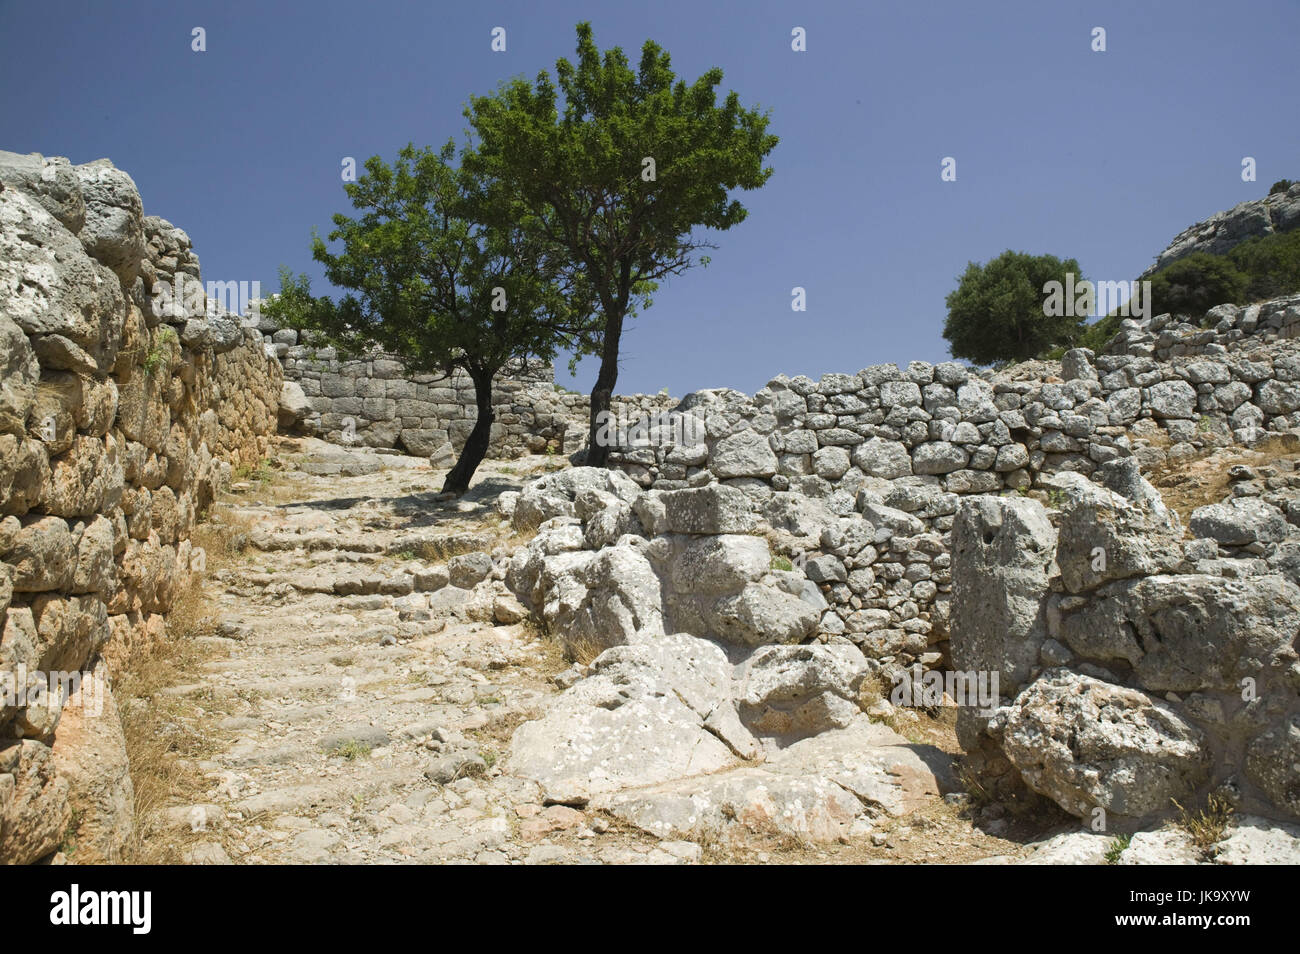 Griechenland, Kreta, Lato, Ausgrabungsstätte, Ruinen, Stadt, antik, dorisch, Stock Photo